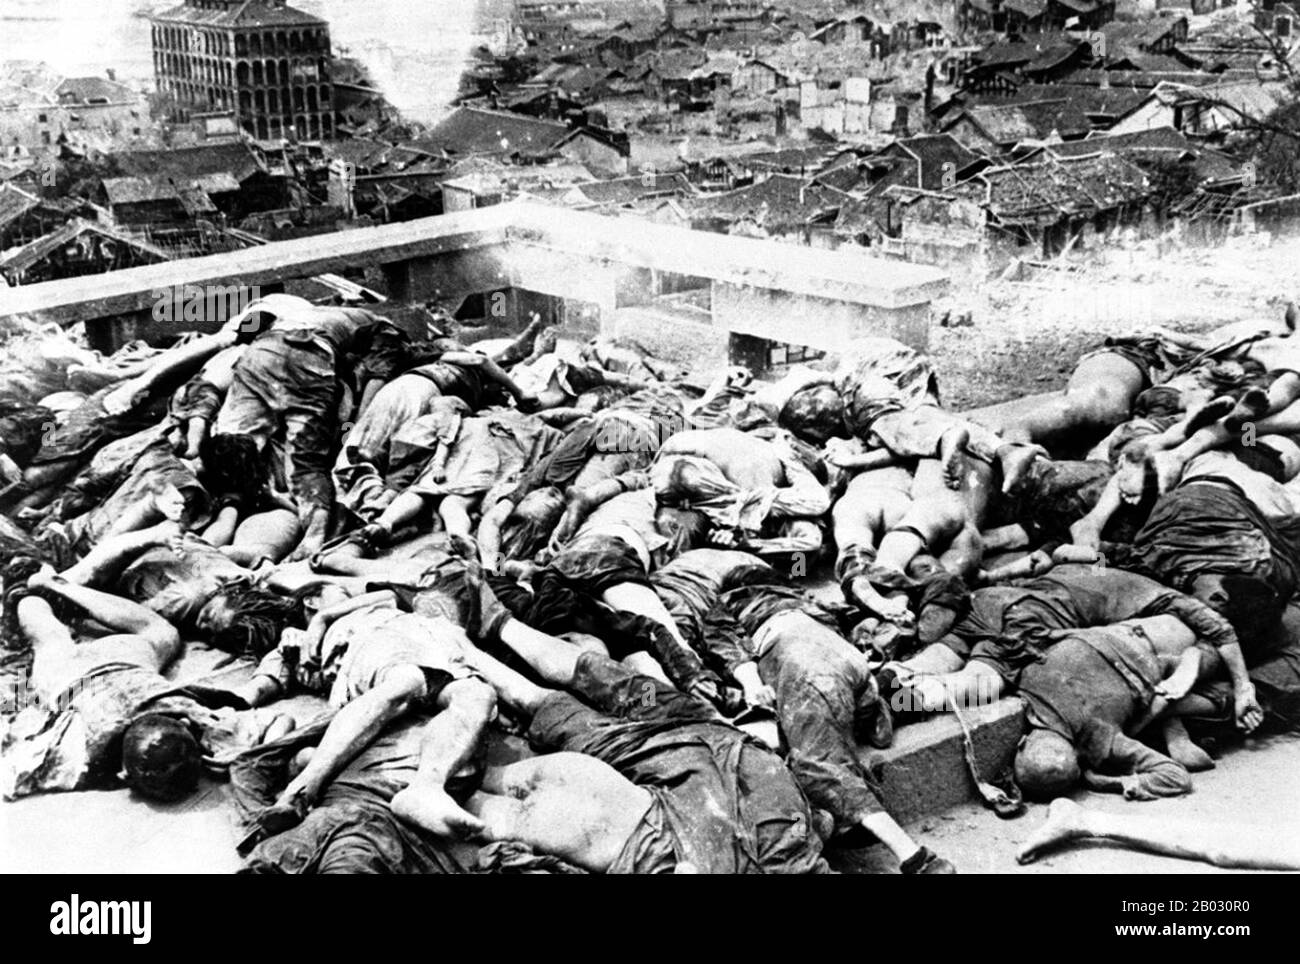 Le bombardement de Chongqing faisait partie d'une opération de bombardement terroriste menée par le Service aérien de l'Armée japonaise impériale et le Service aérien de la Marine japonaise impériale. Une estimation conservatrice place le nombre de bombardements à plus de 5000, avec plus de 1.500 bombes lâchées, principalement des bombes incendiaires. Les cibles étaient généralement des zones résidentielles, des zones d'affaires, des écoles, des hôpitaux et d'autres cibles non militaires. Ces bombardements visaient à démoraliser le gouvernement chinois, qui avait déplacé la capitale à Chongqing parce qu'elle était plus inaccessible aux forces terrestres japonaises, ou dans le cadre de la Banque D'Images